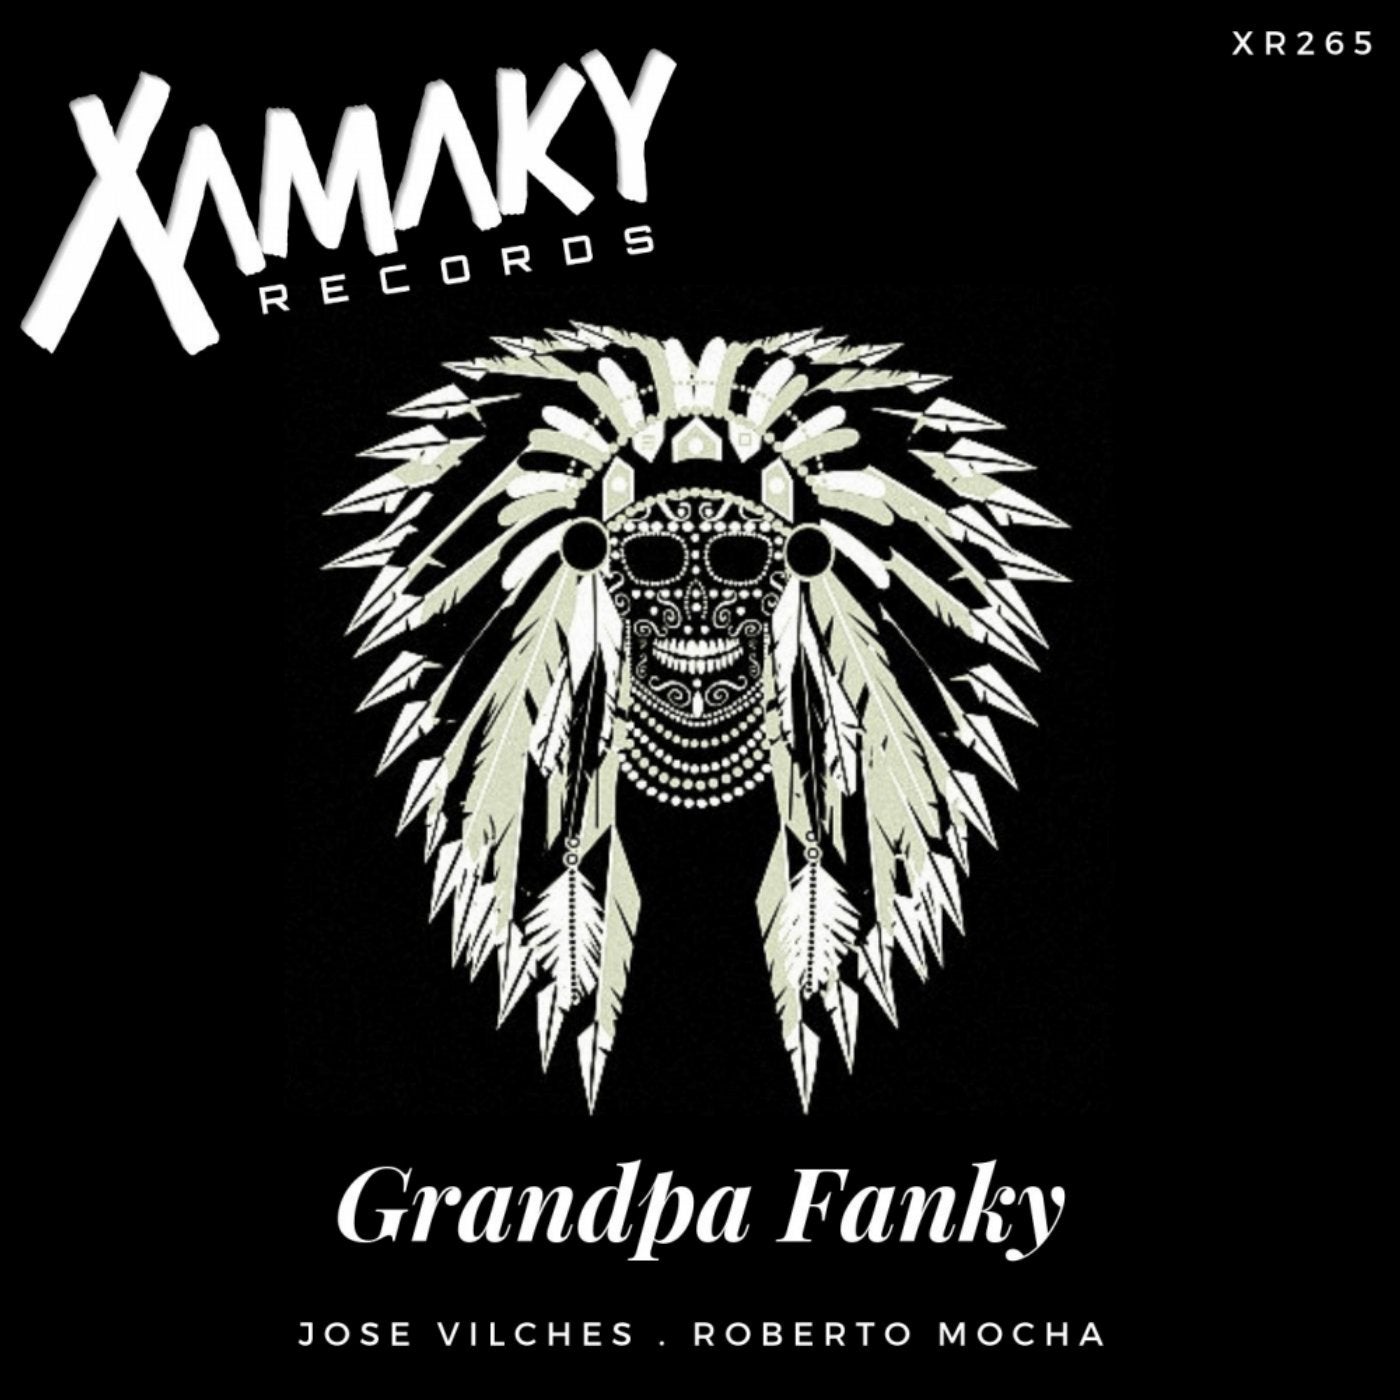 Grandpa Fanky